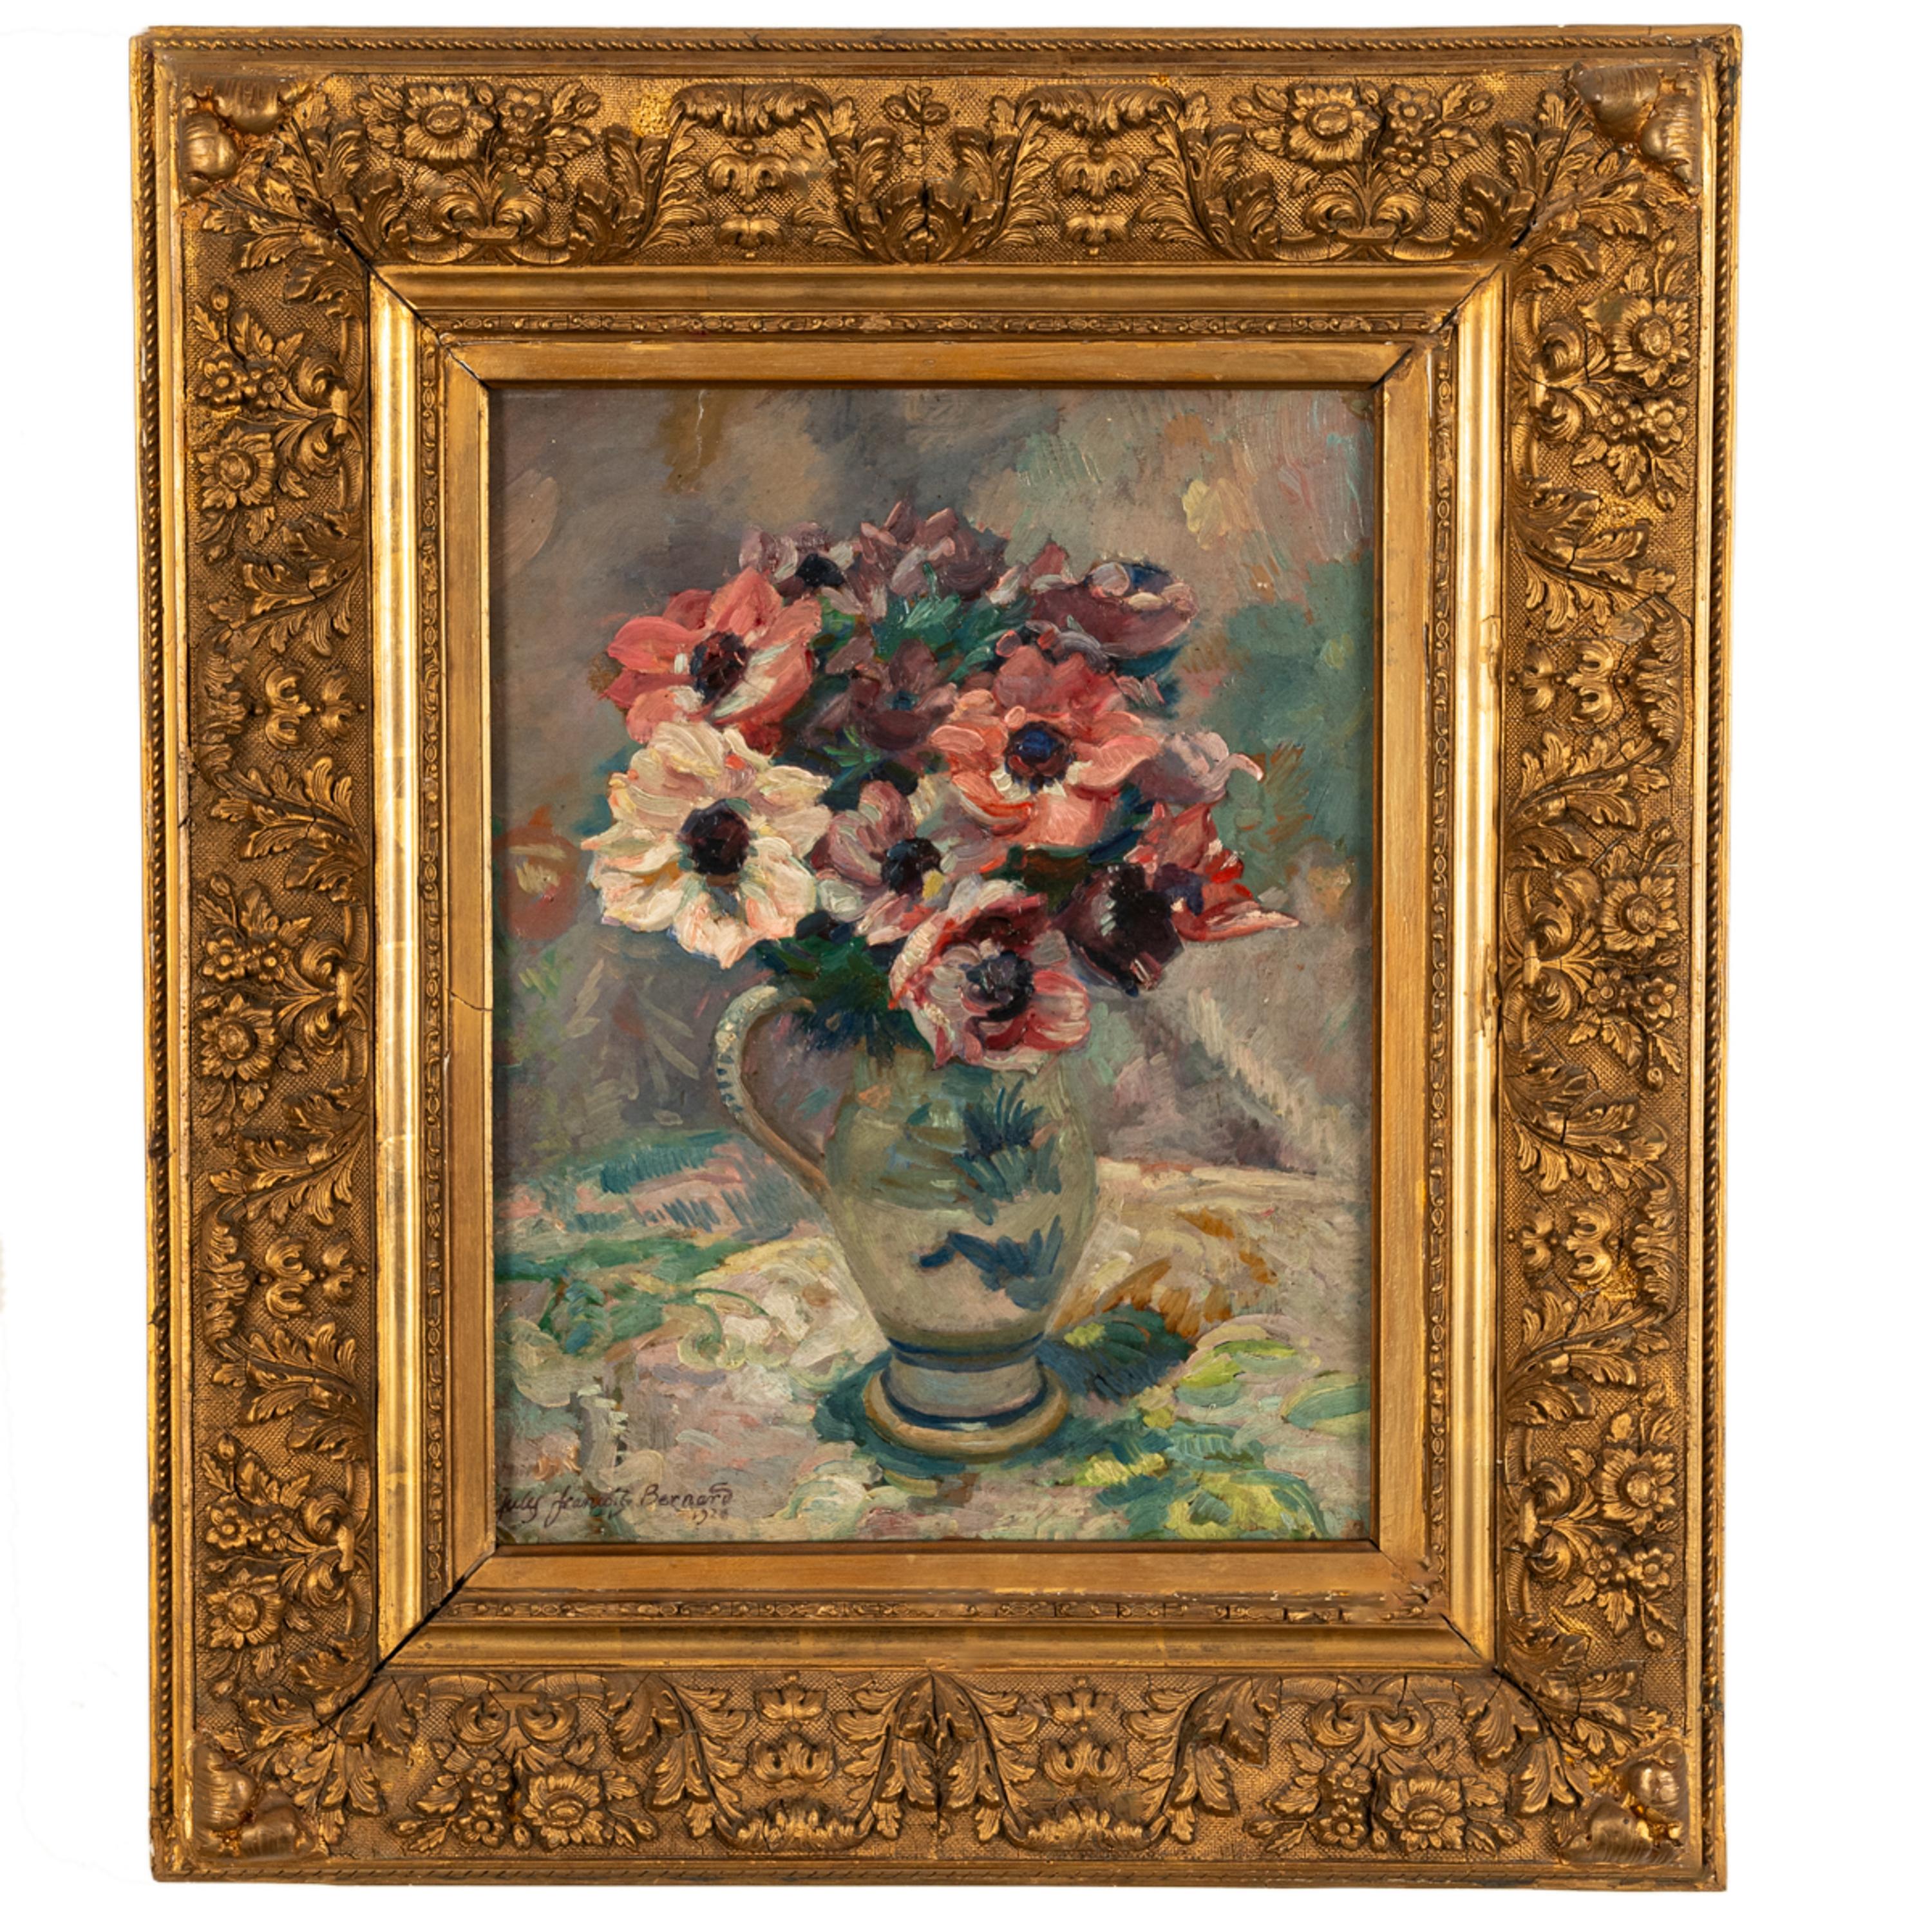 Ein gutes antikes französisches Blumenstillleben des französischen Künstlers Jules Francois Bernard (1884-1942), Öl auf Leinwand, datiert 1920.
Dieses sehr attraktive impressionistische Stillleben zeigt einen bunten Strauß Pfingstrosen in einem